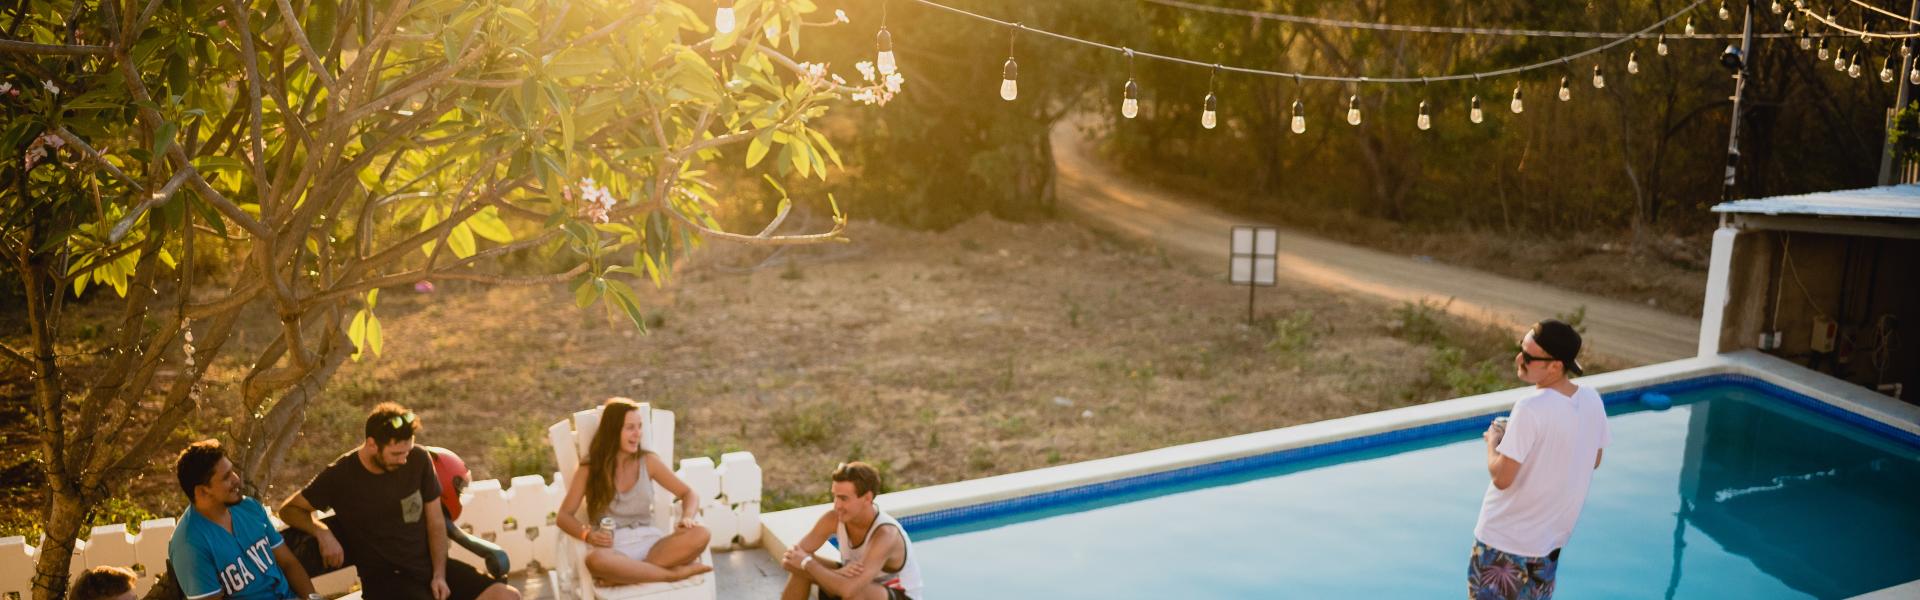 Ferienhaus mit Pool auf Menorca - Casamundo